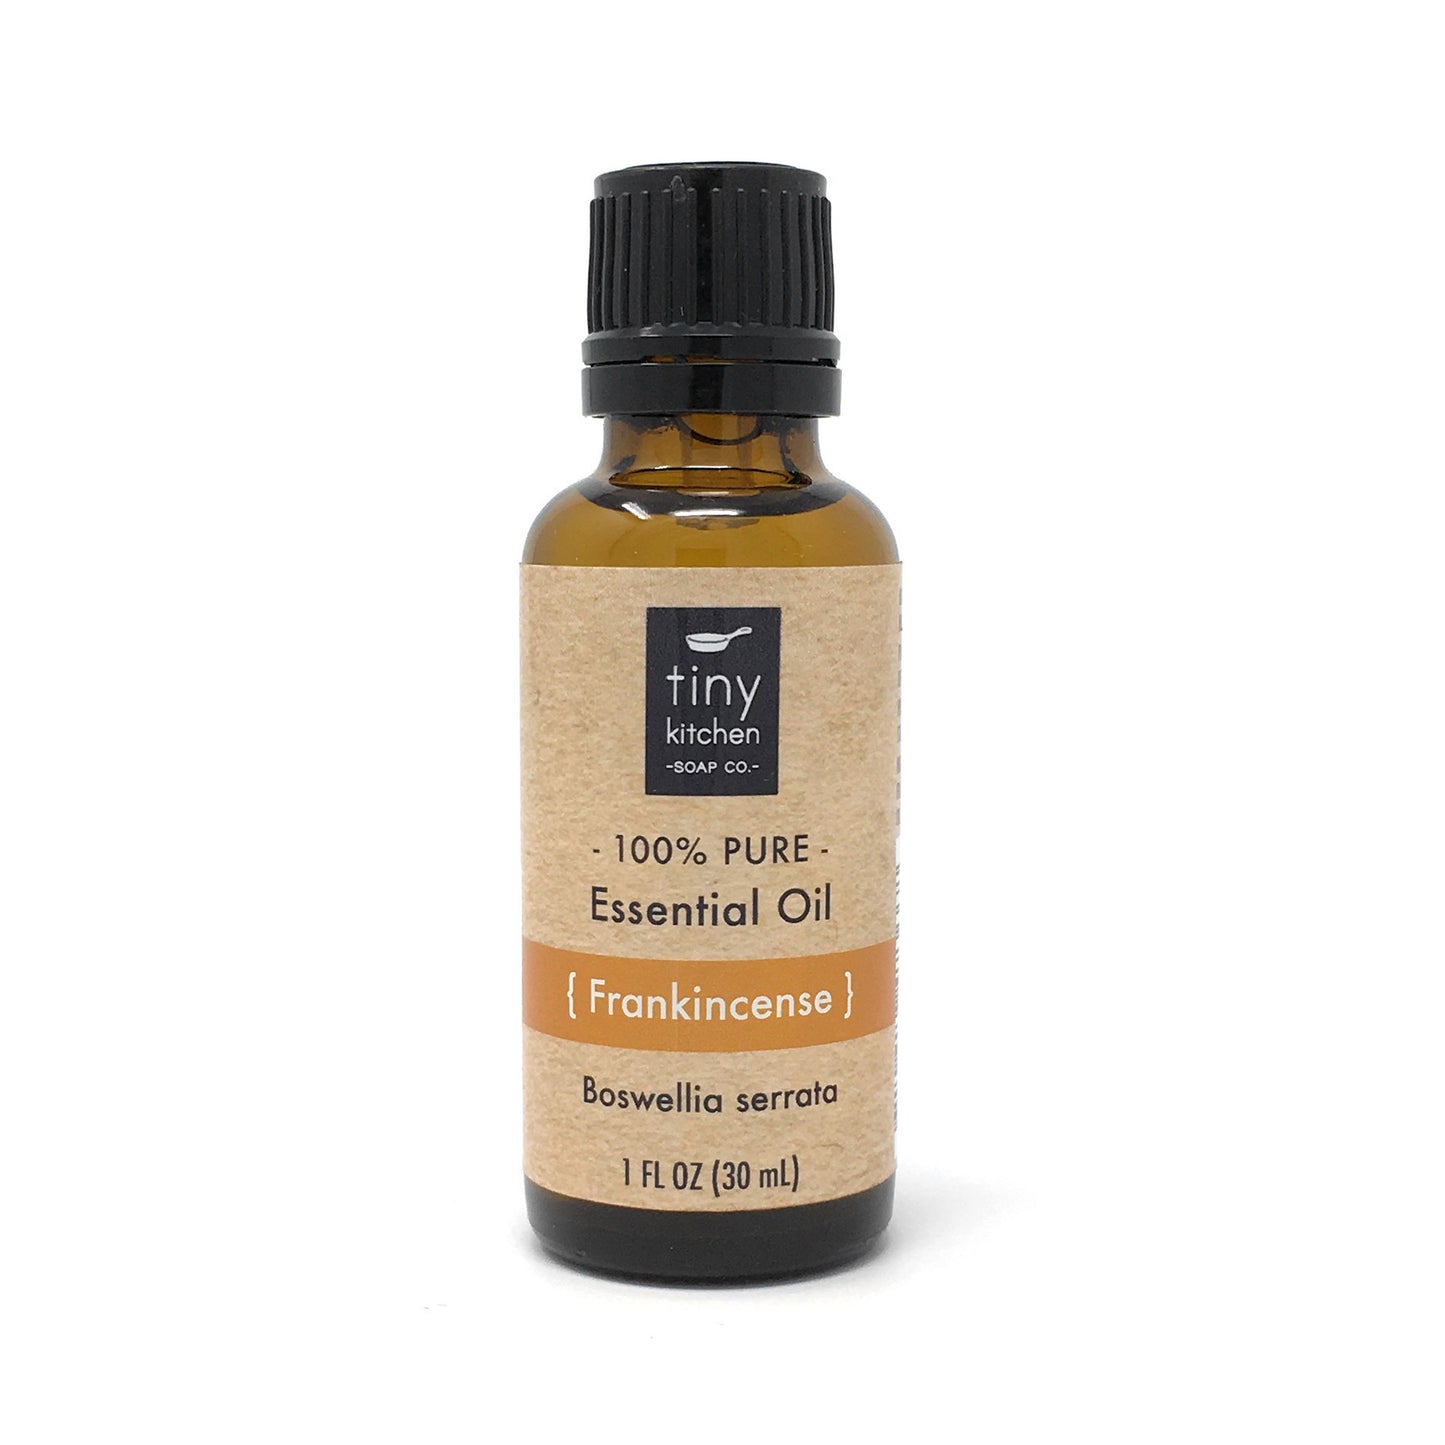 Pure Frankincense Essential Oil - Boswellia serrata